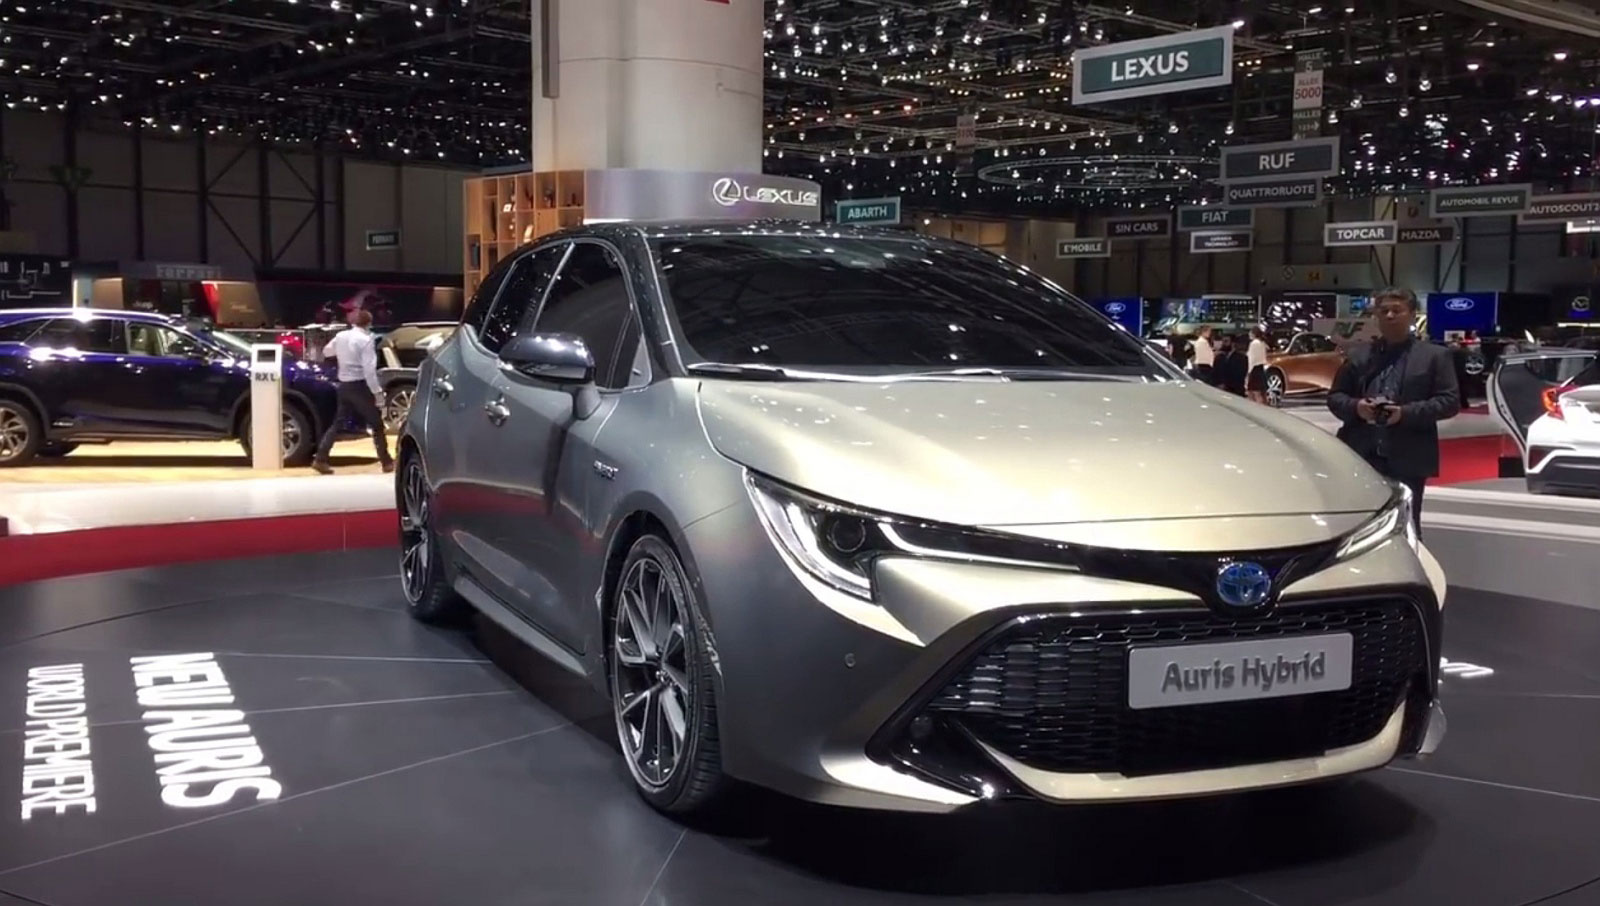 Foto dalla presentazione della nuova Toyota auris hybrid 2019 al salone di Ginevra 2018